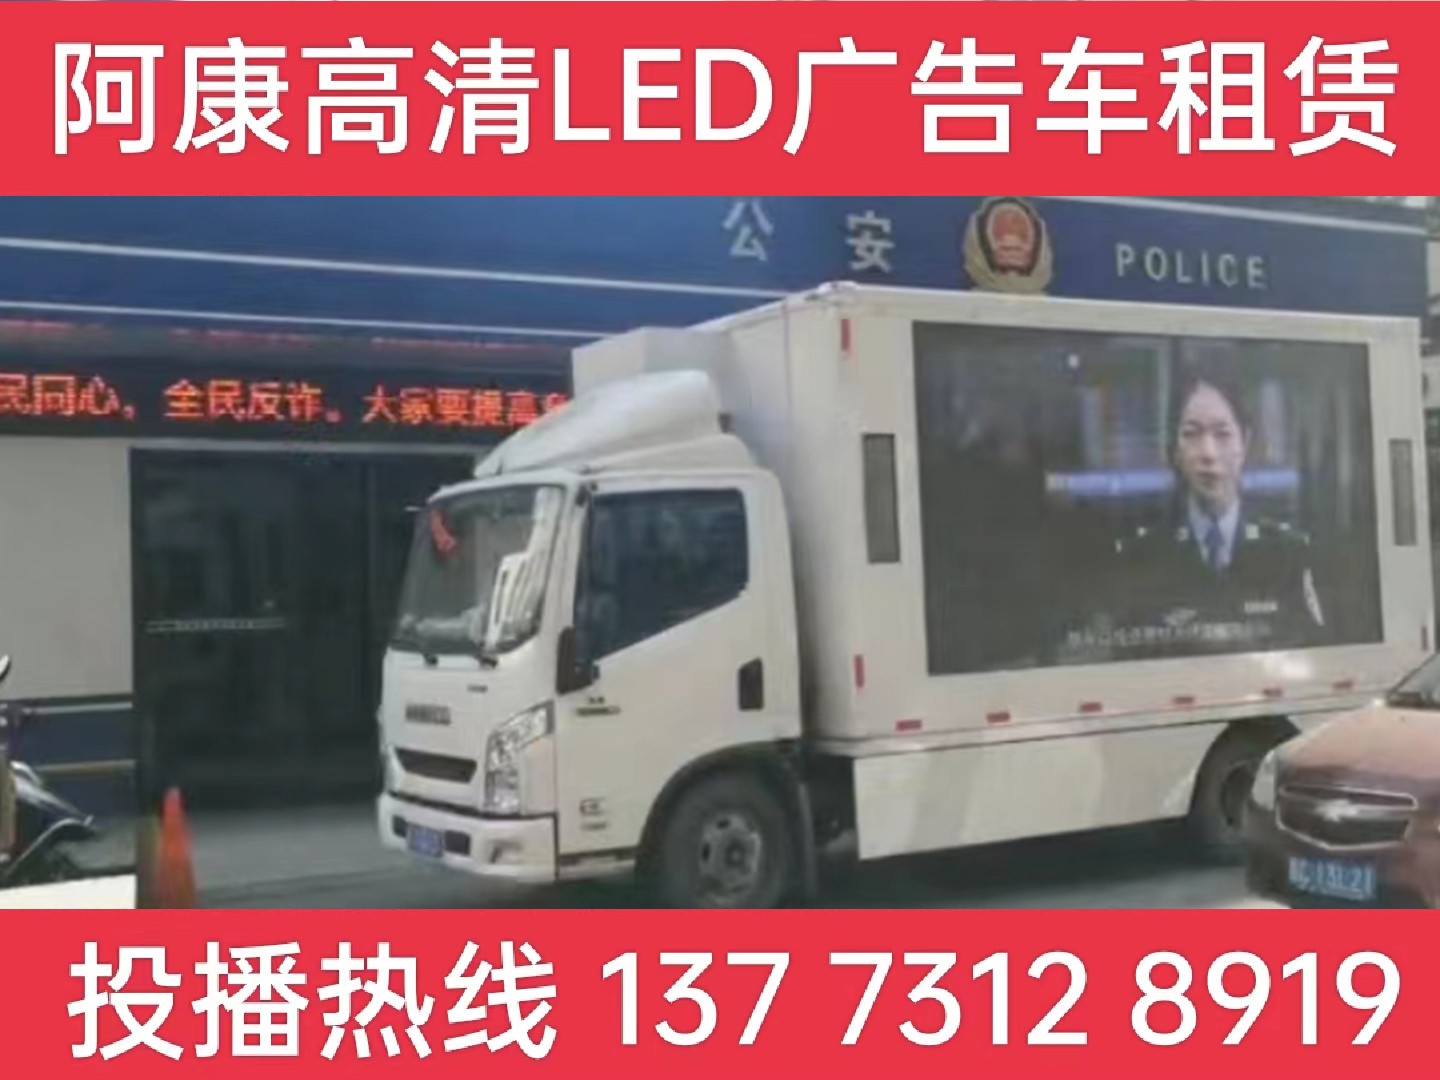 吴江LED广告车租赁-反诈宣传